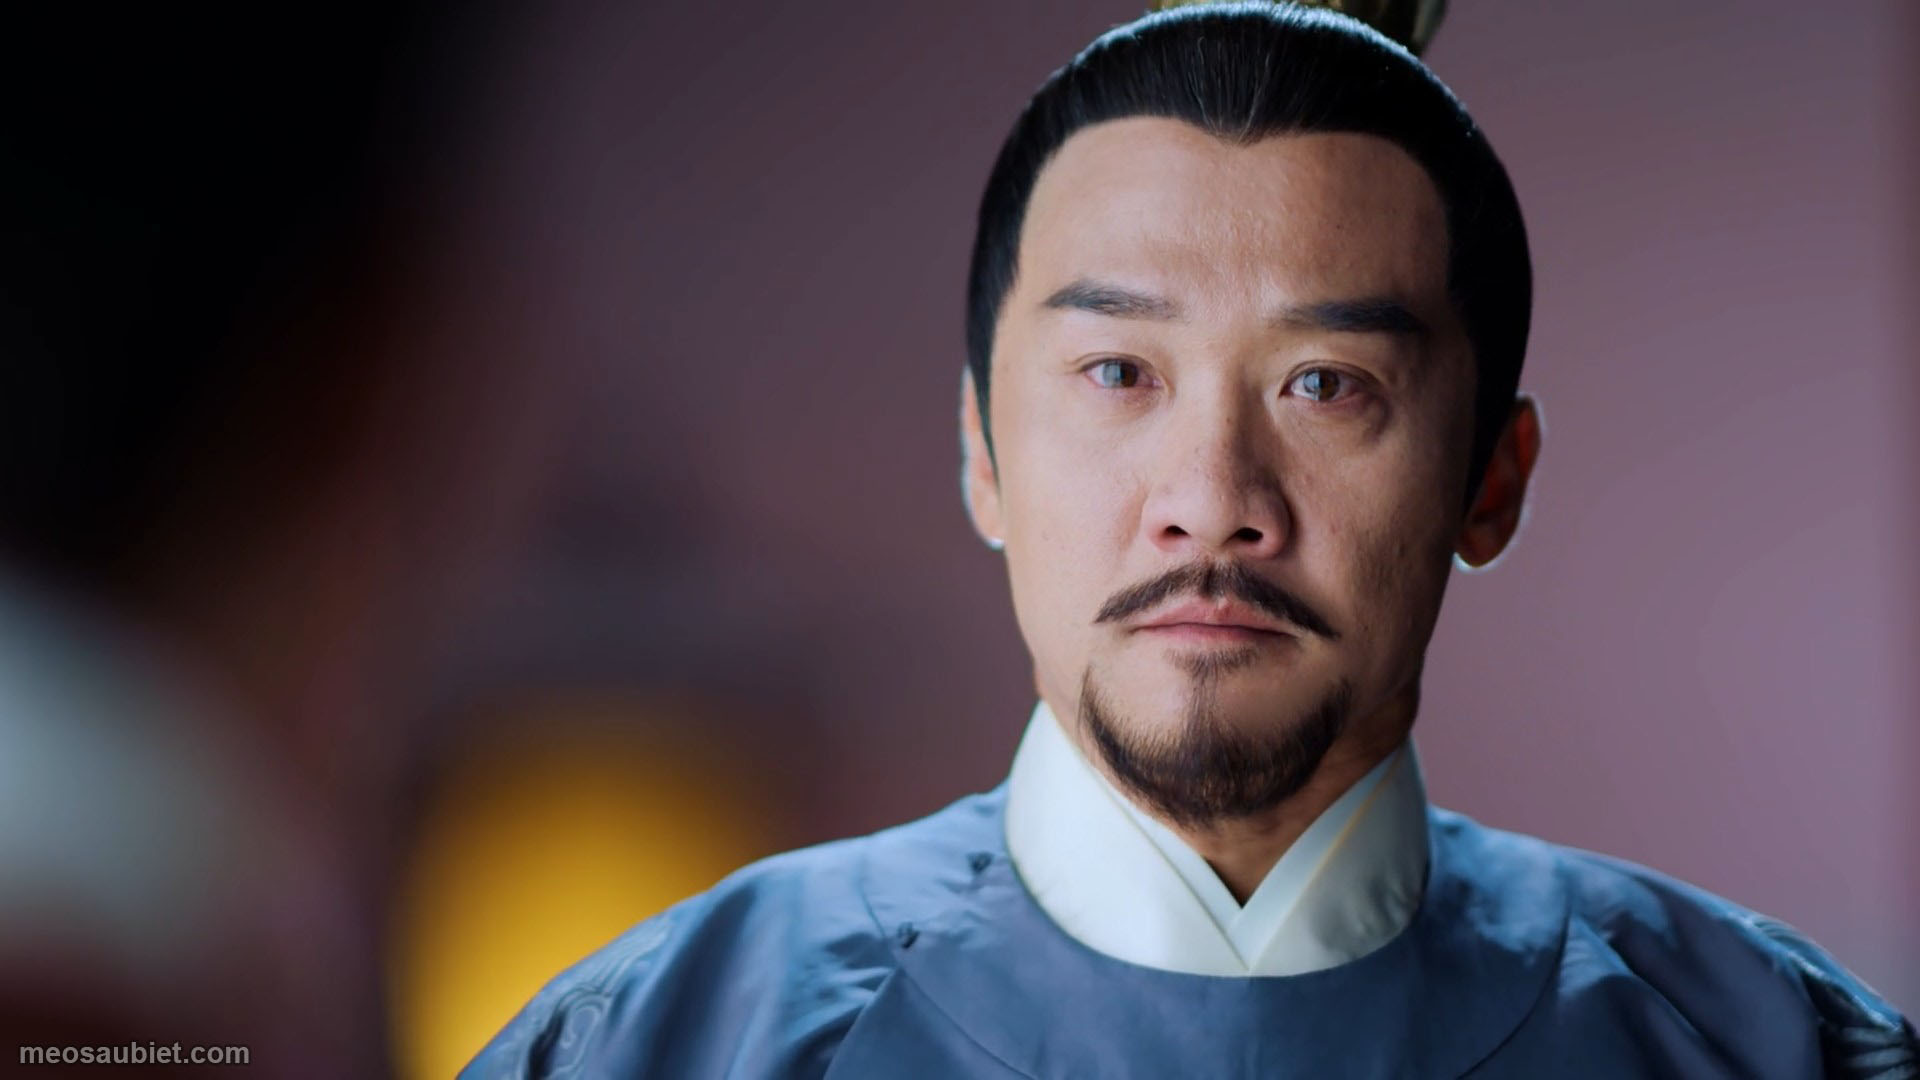 Hạc Lệ Hoa Đình 2019 Hoàng Chí Trung trong vai Hoàng đế Tiêu Duệ Giám